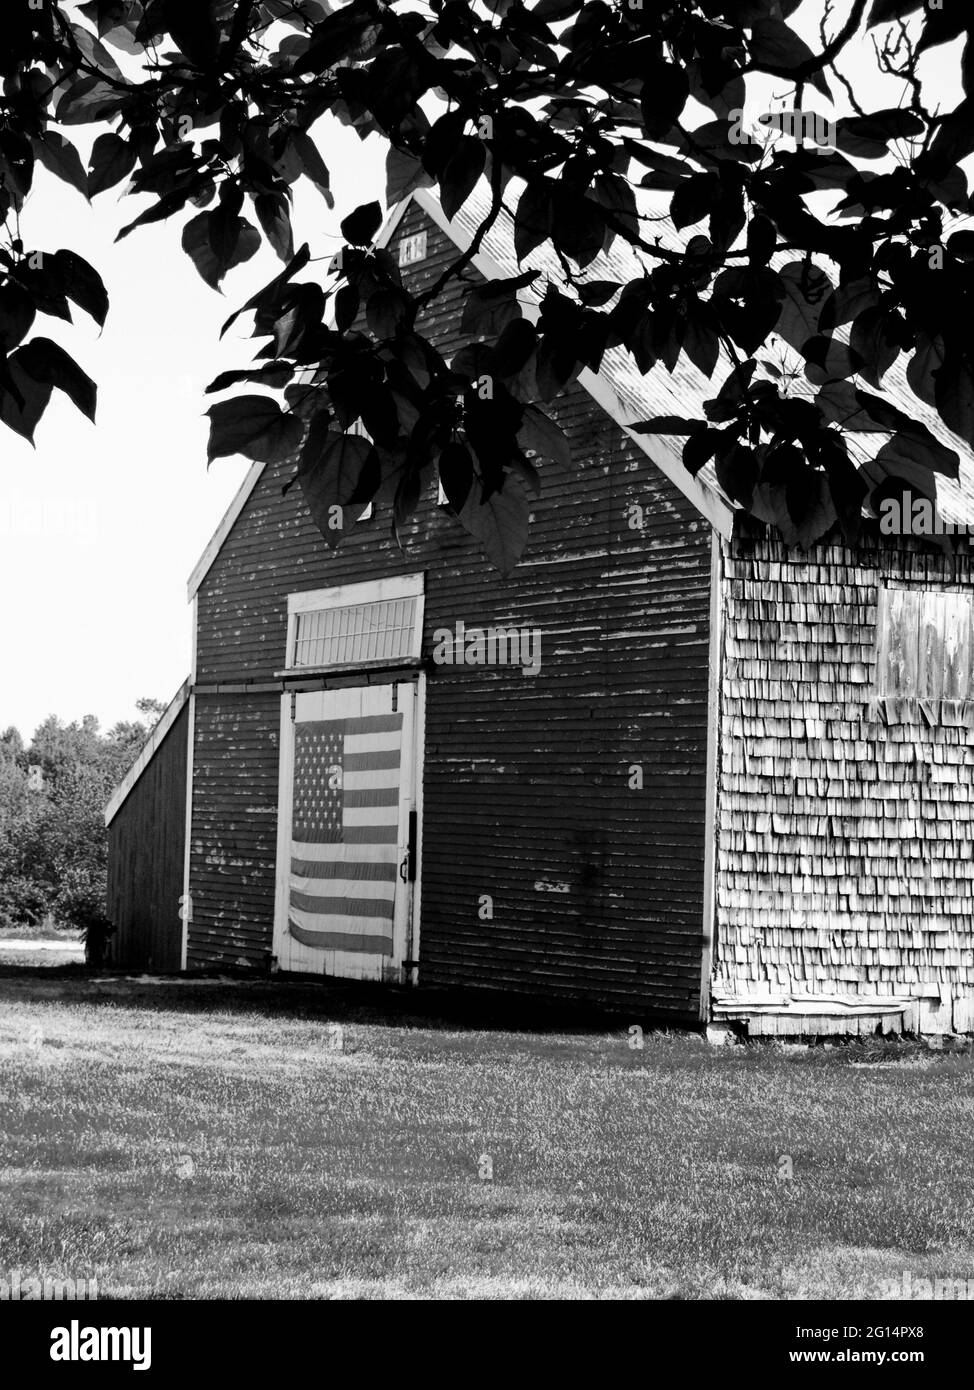 Photographie d'une ancienne grange avec un drapeau américain sur la porte de la grange, Nouvelle-Angleterre, Etats-Unis. Banque D'Images